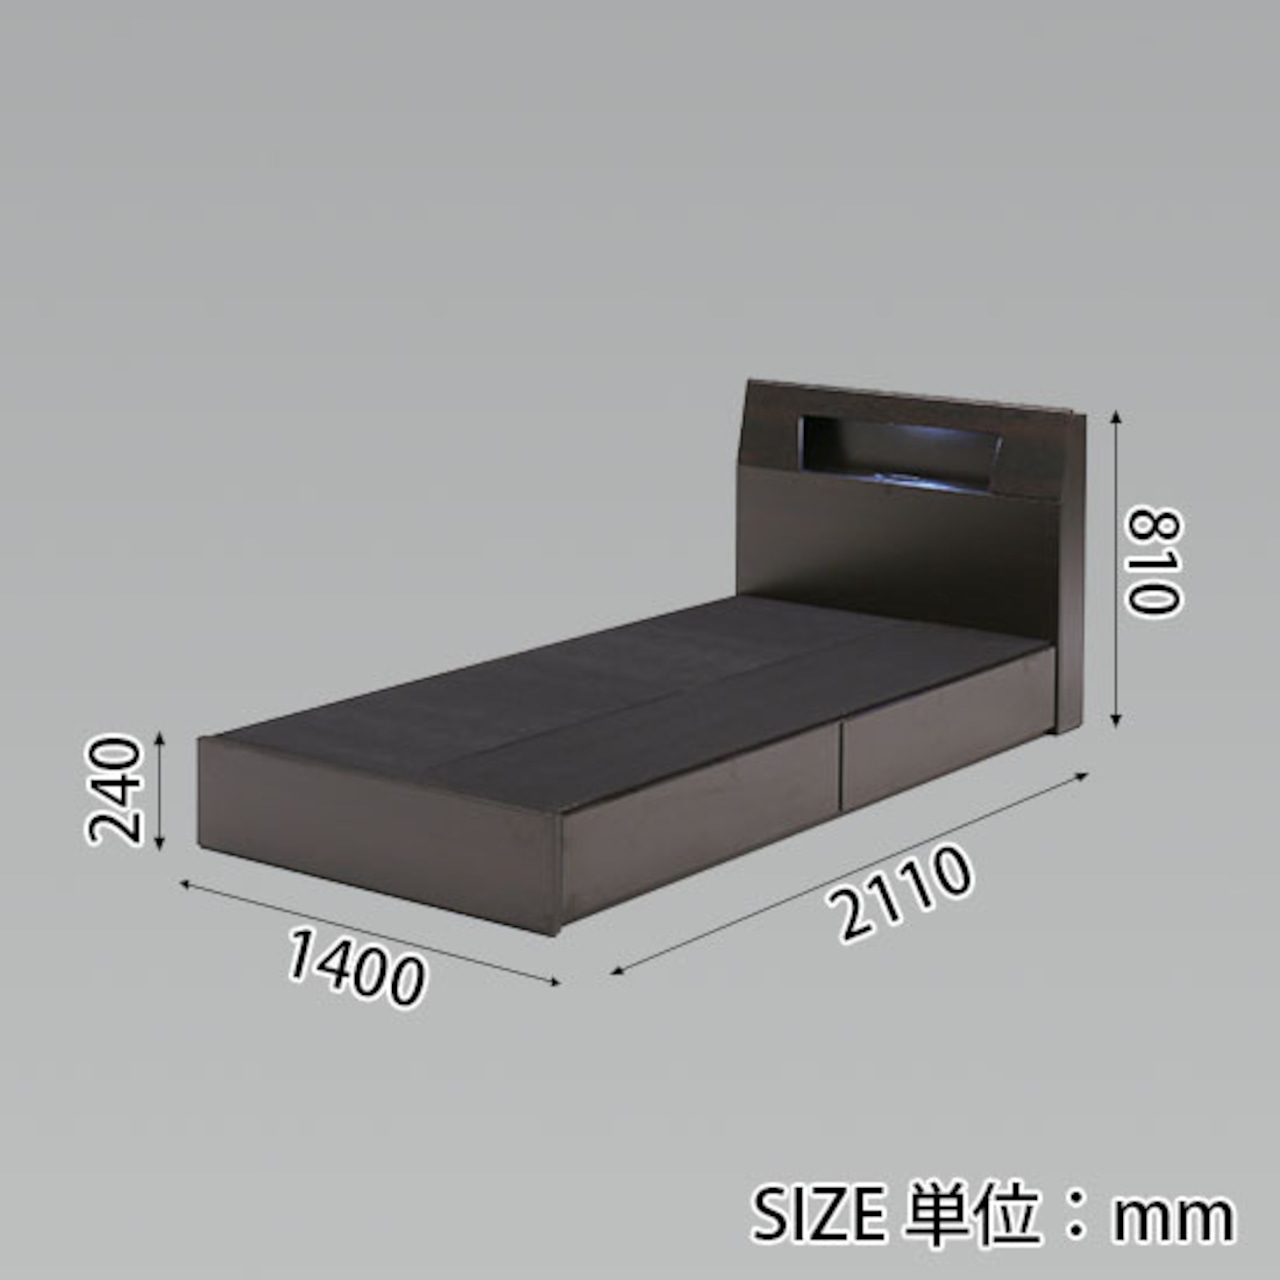 【ダブル】ベッド ダブルベッド 収納付き ライト付 コンセント付 寝具